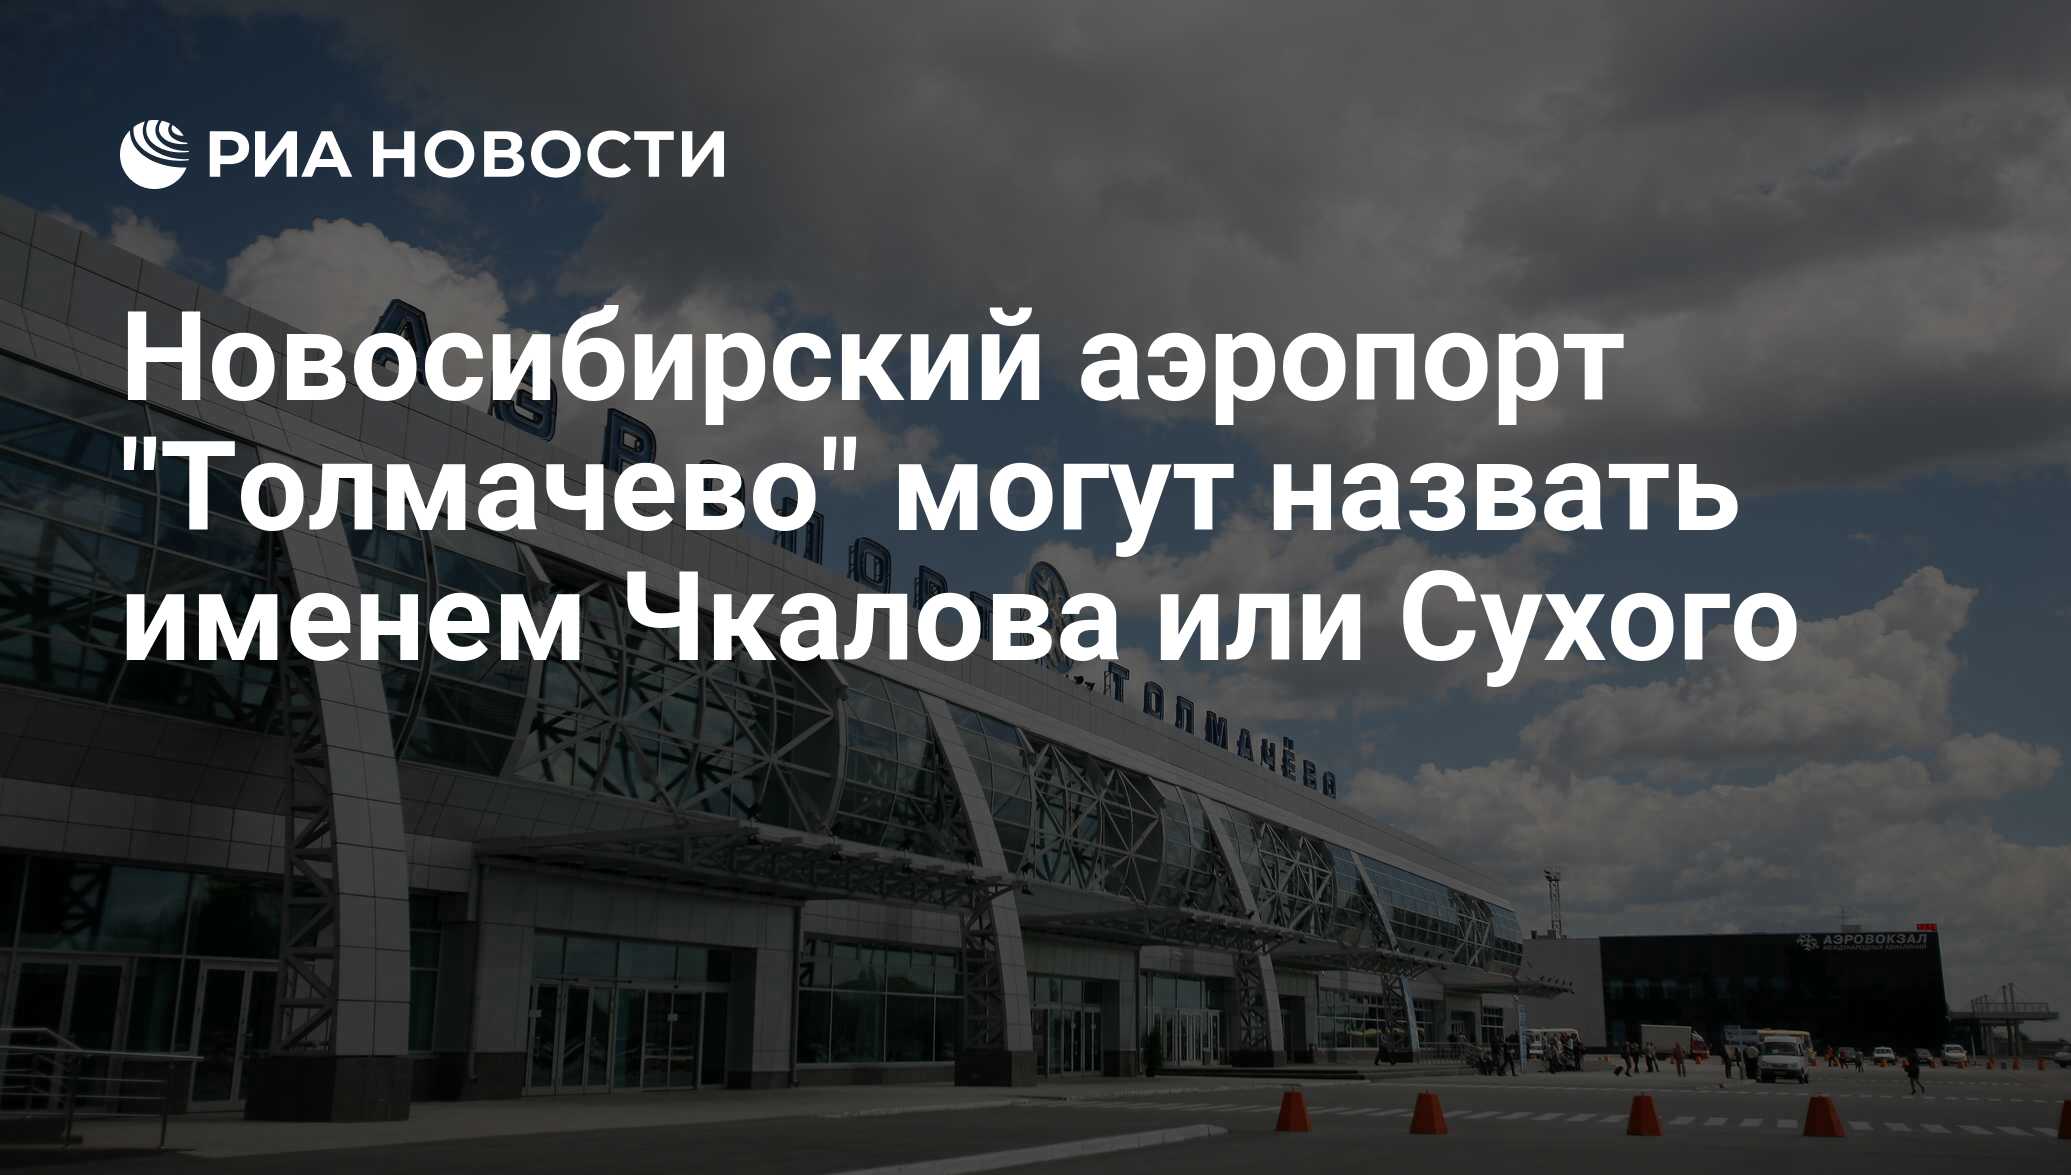 Толмачева аэропорт новосибирск купить билеты